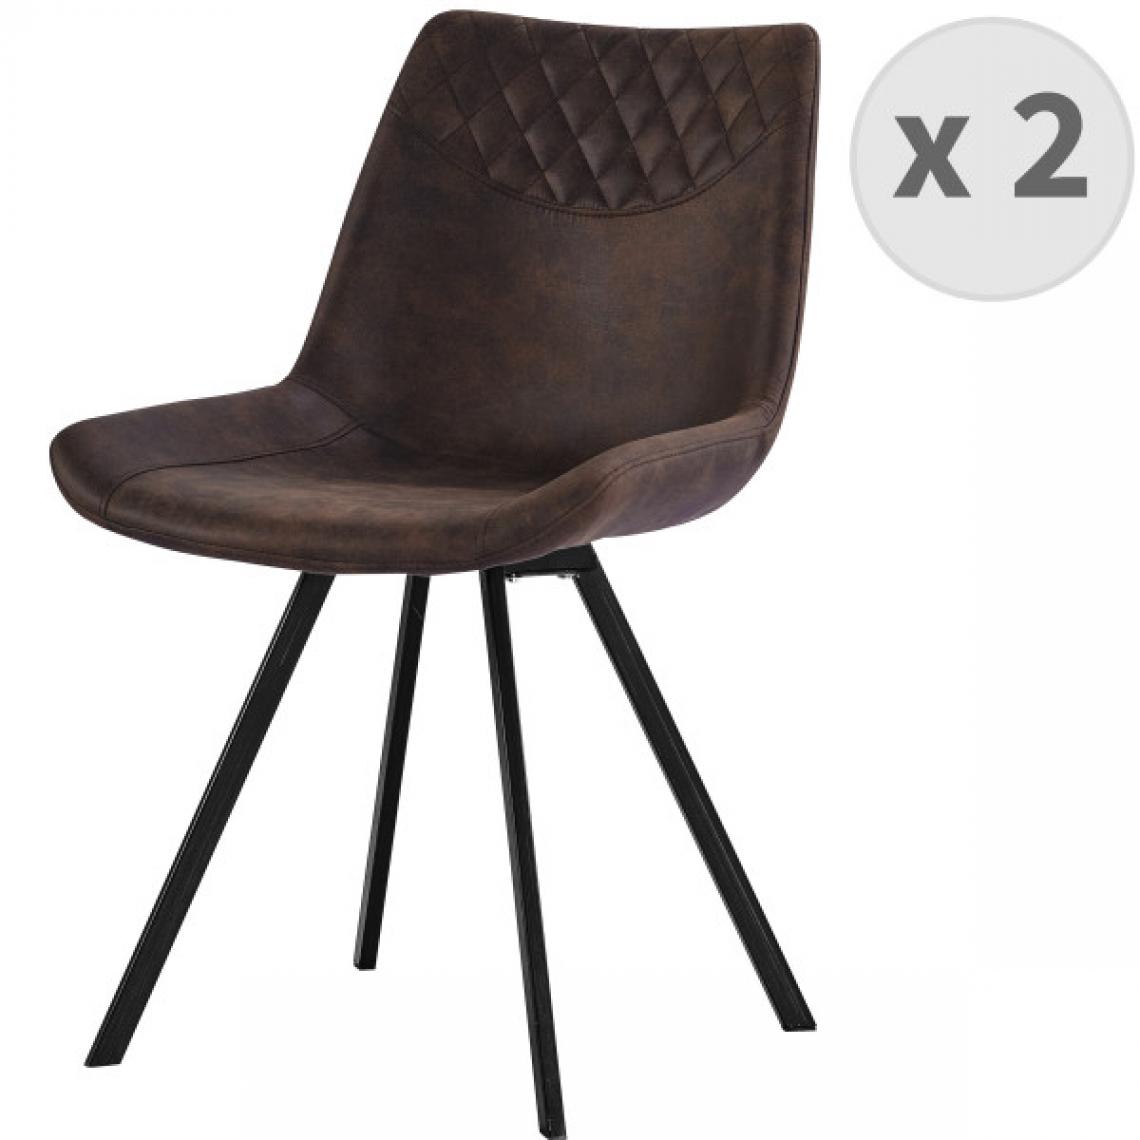 Moloo - FALCON-Chaise microfibre vintage café pieds métal noir (x2) - Chaises